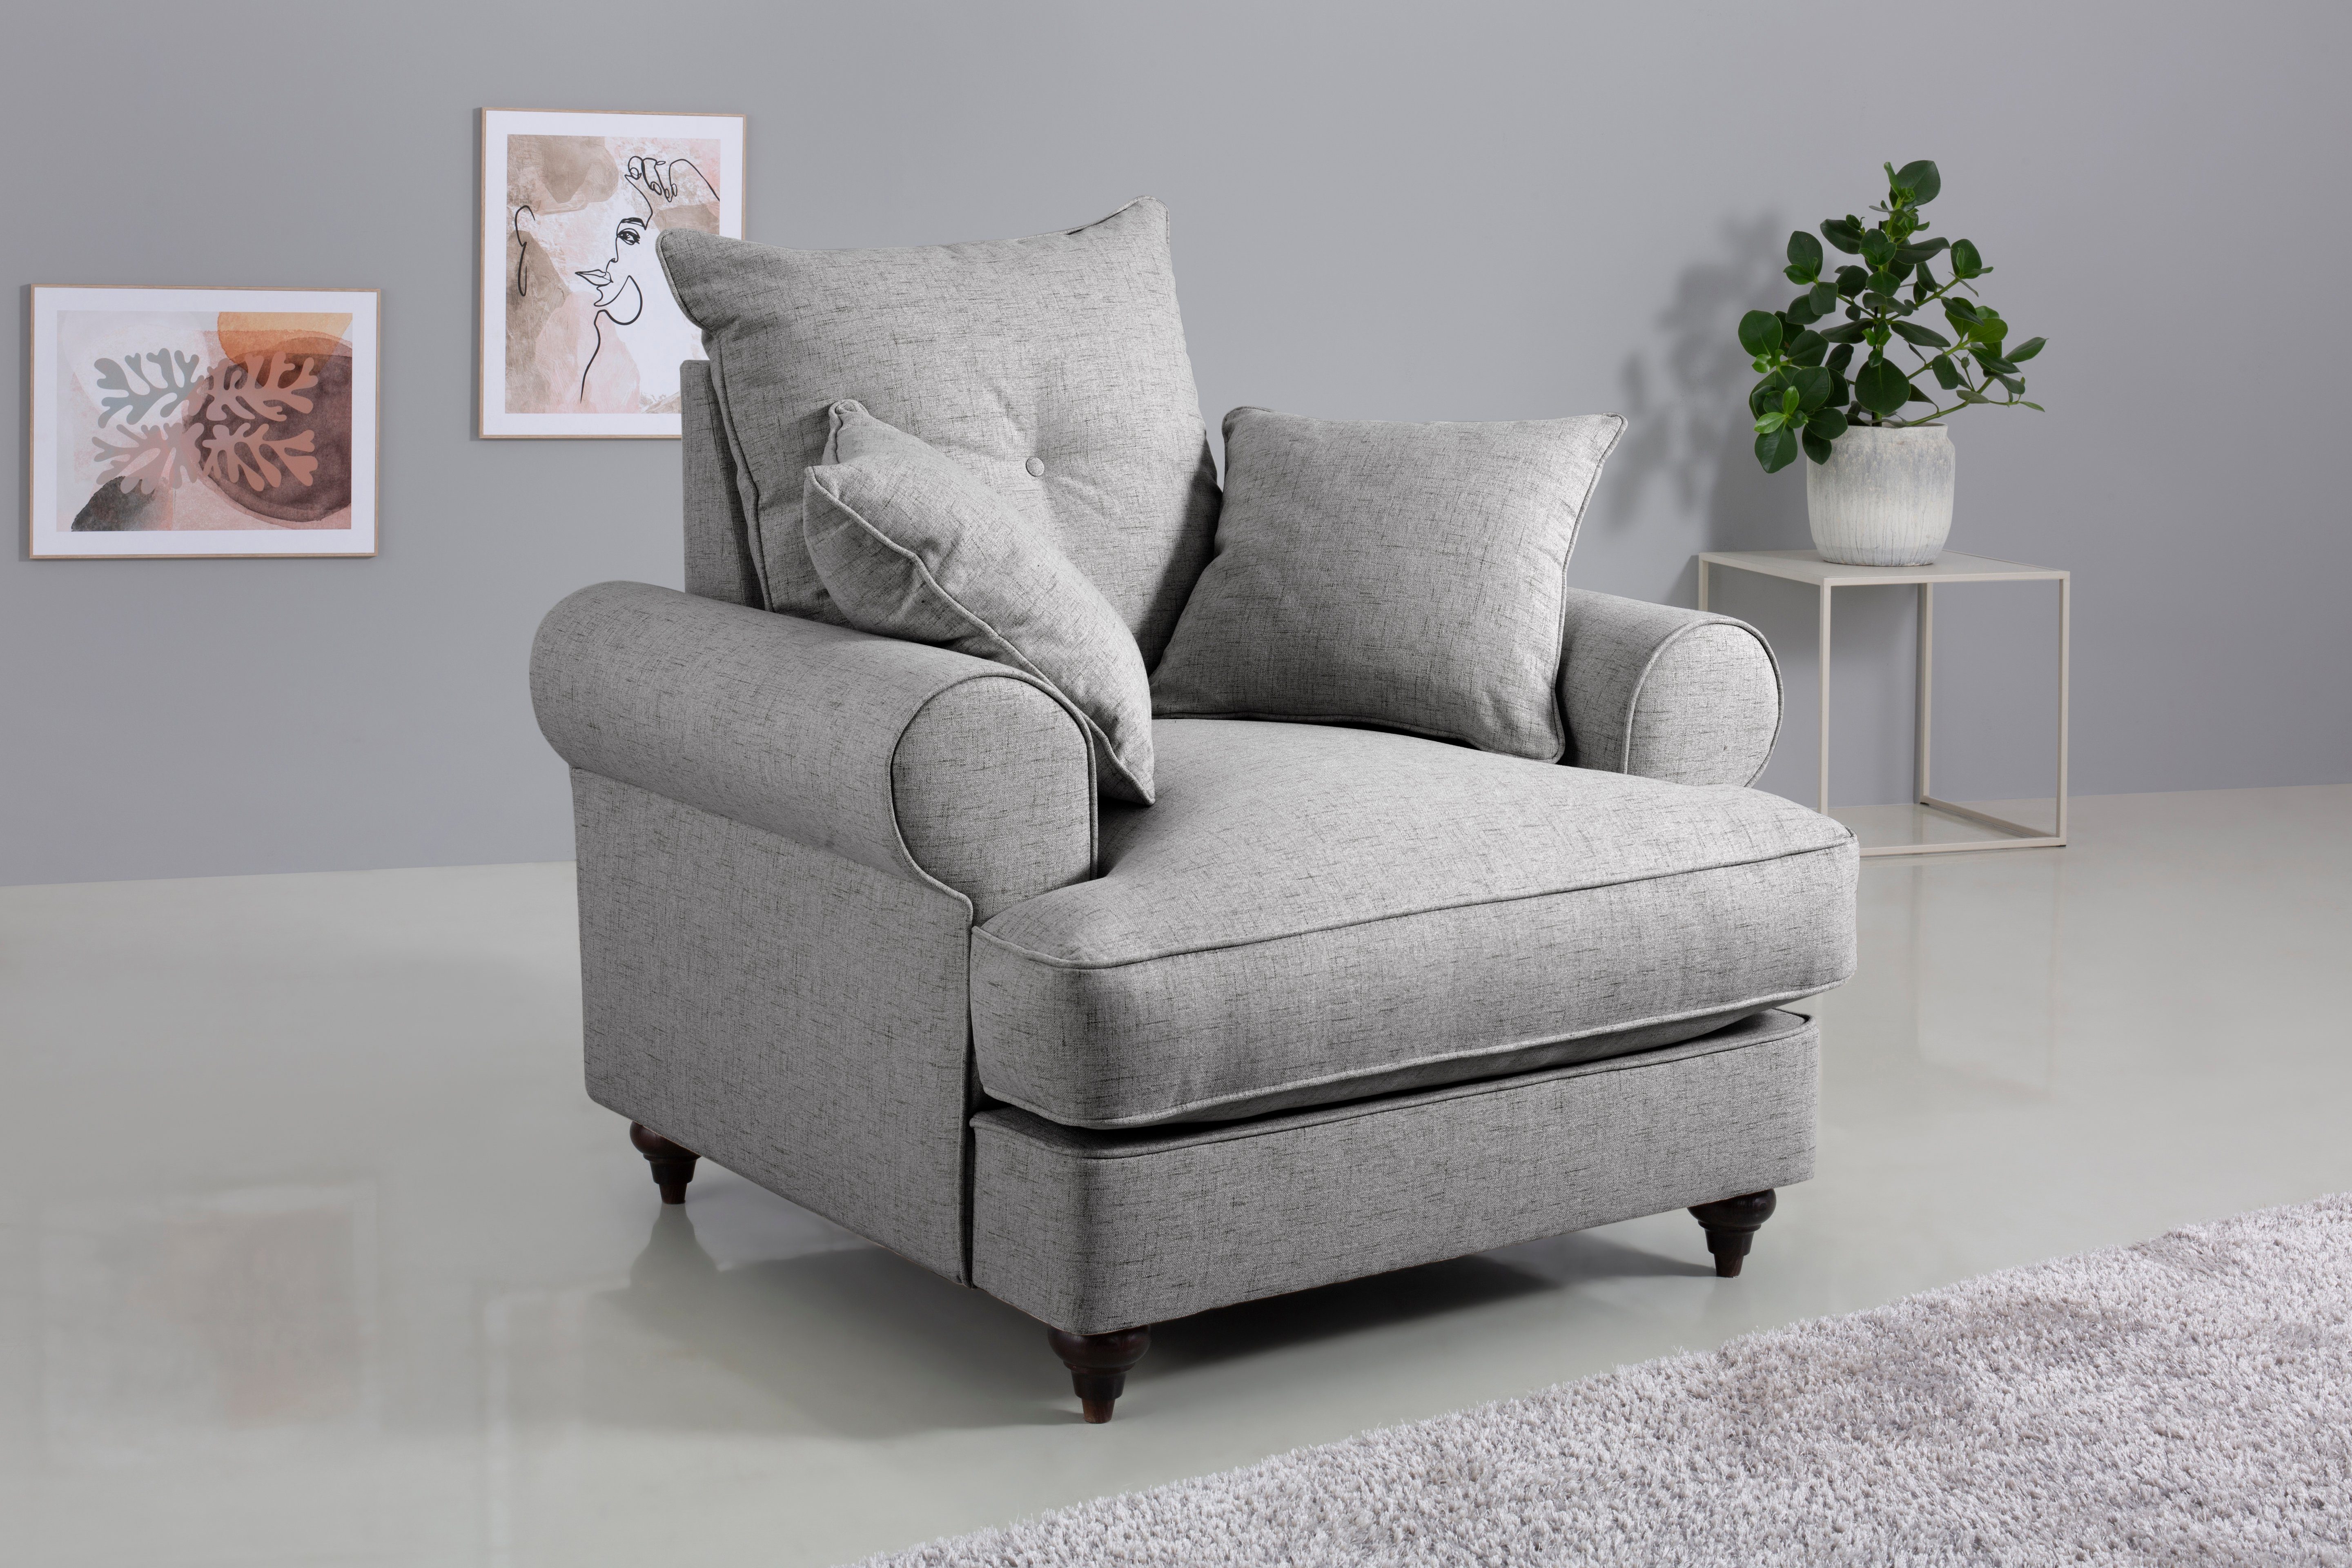 Beliebte Artikel! Home affaire light mit Kaltschaum, in grey Farben Bloomer, Sessel hochwertigem verschiedenen erhältlich